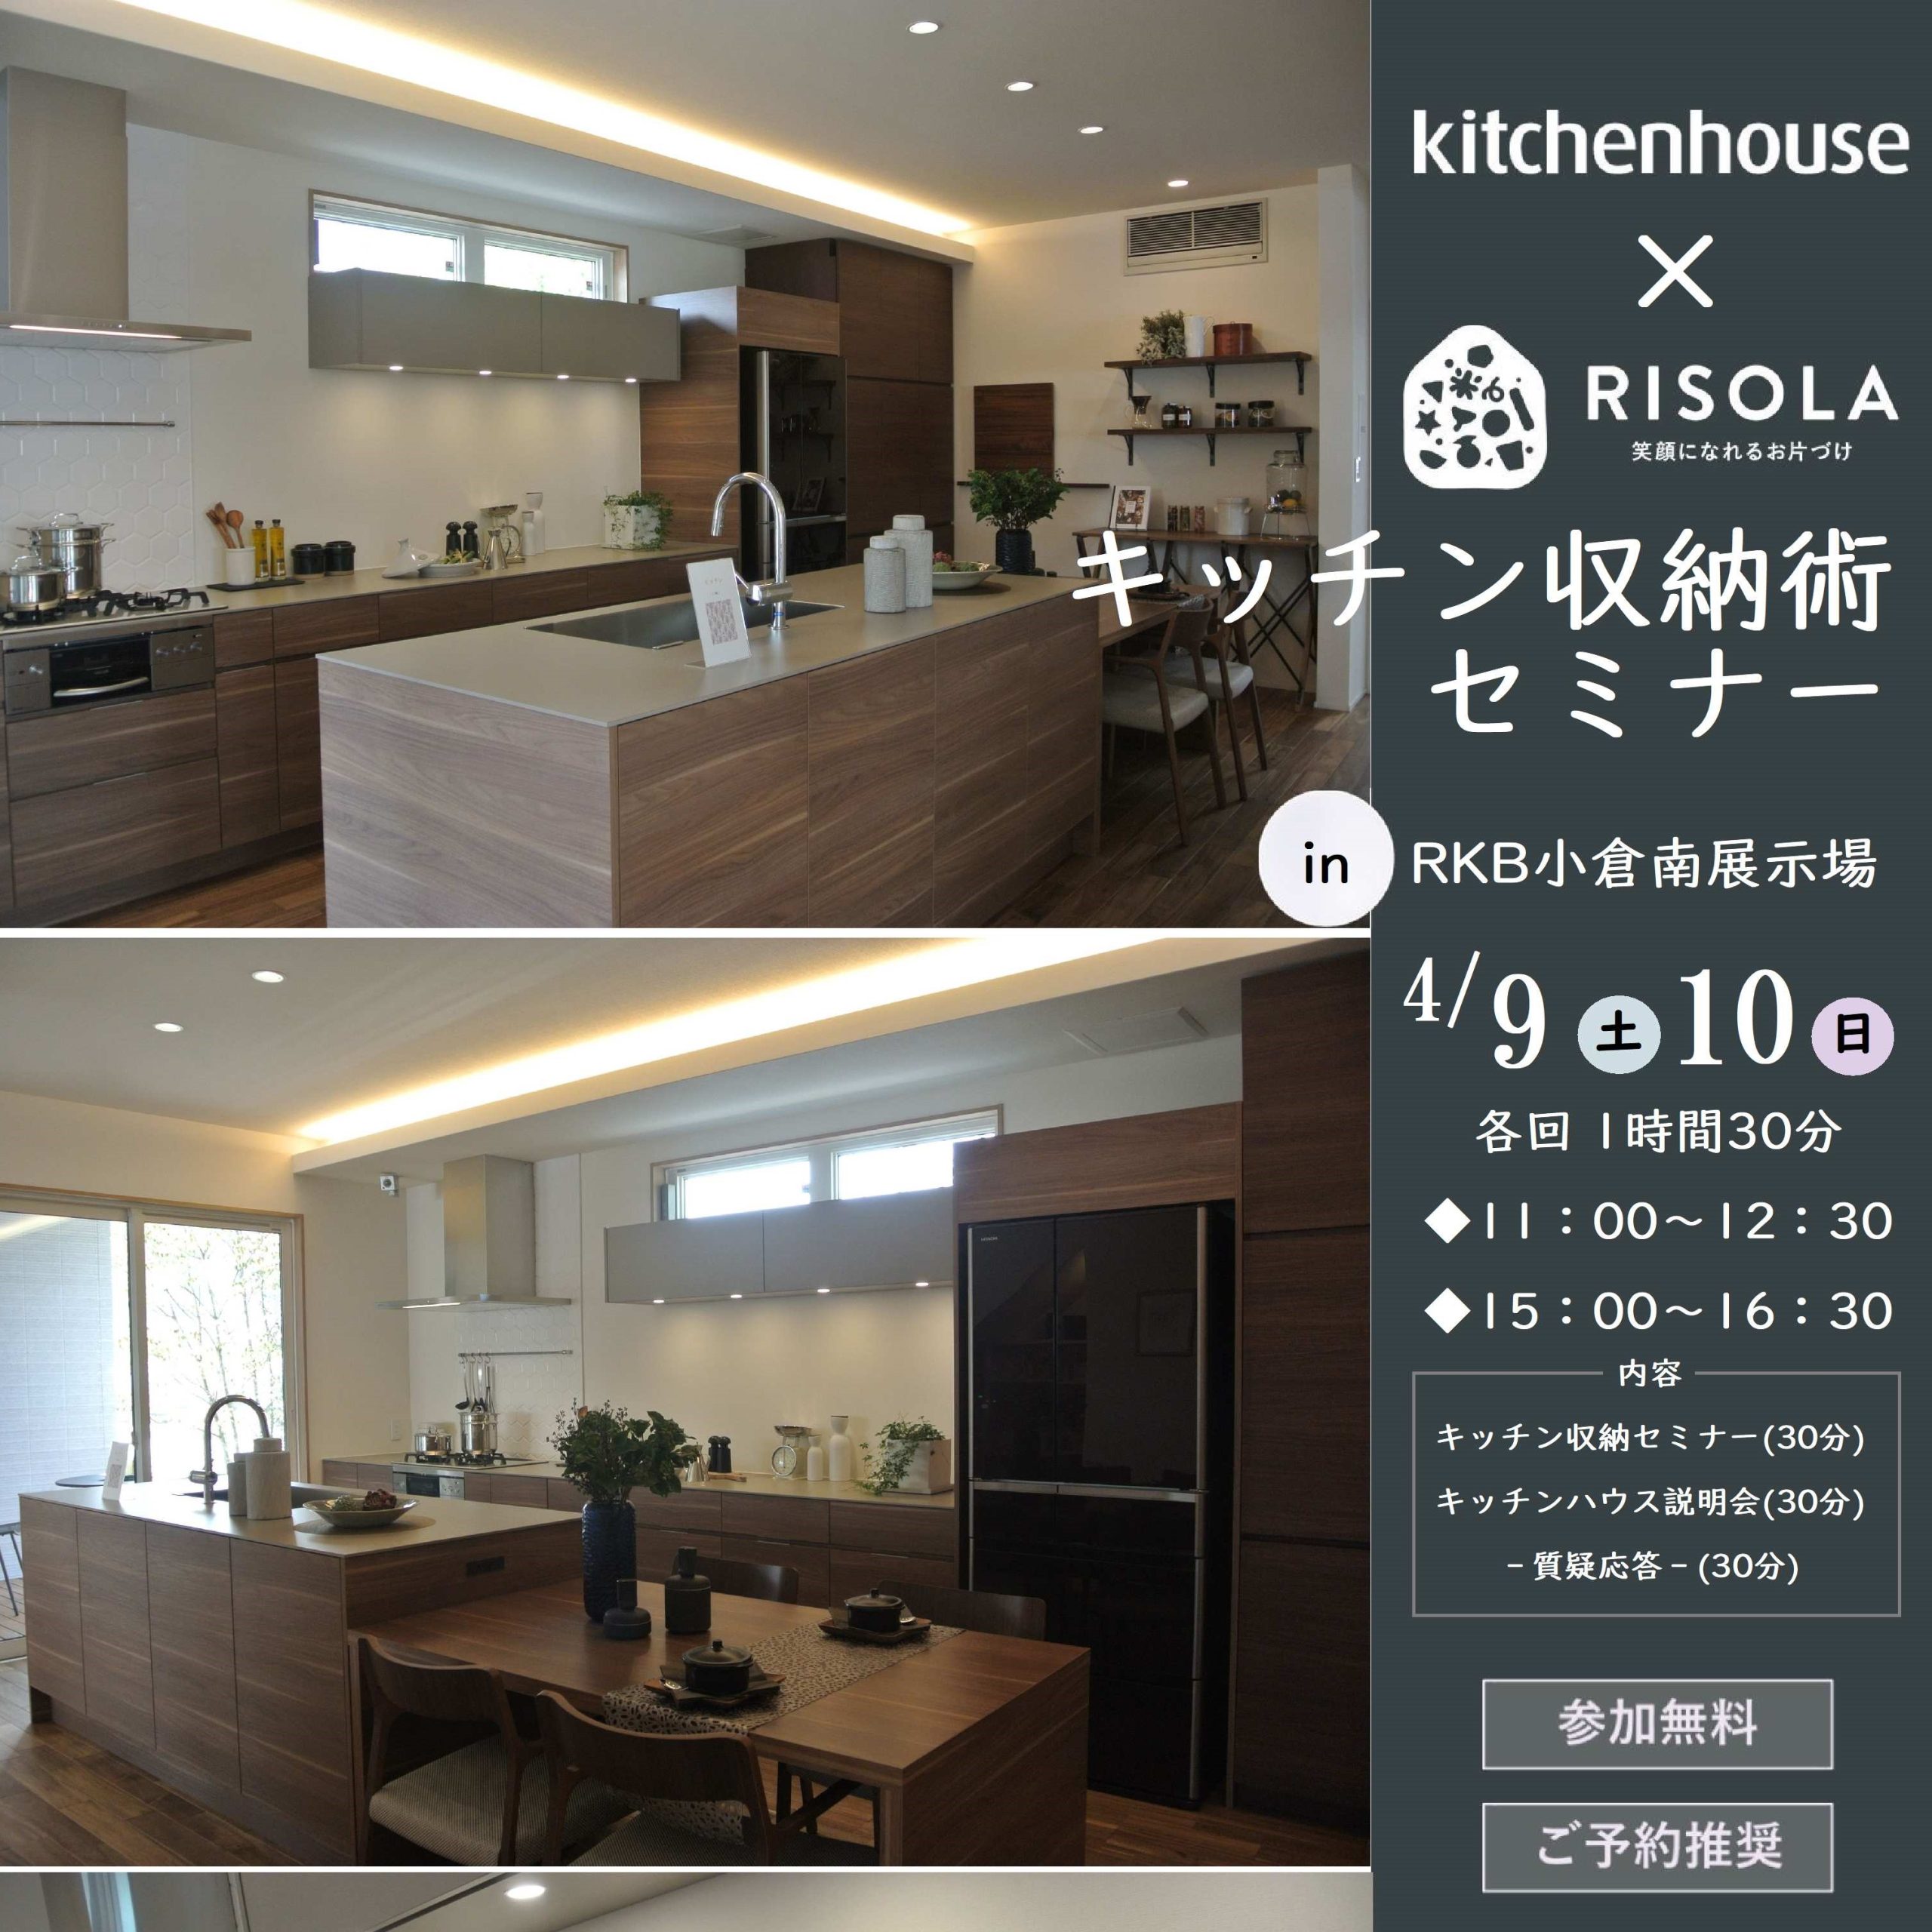 【積水ハウス】kitchenhouse×RISOLA キッチン収納術セミナー